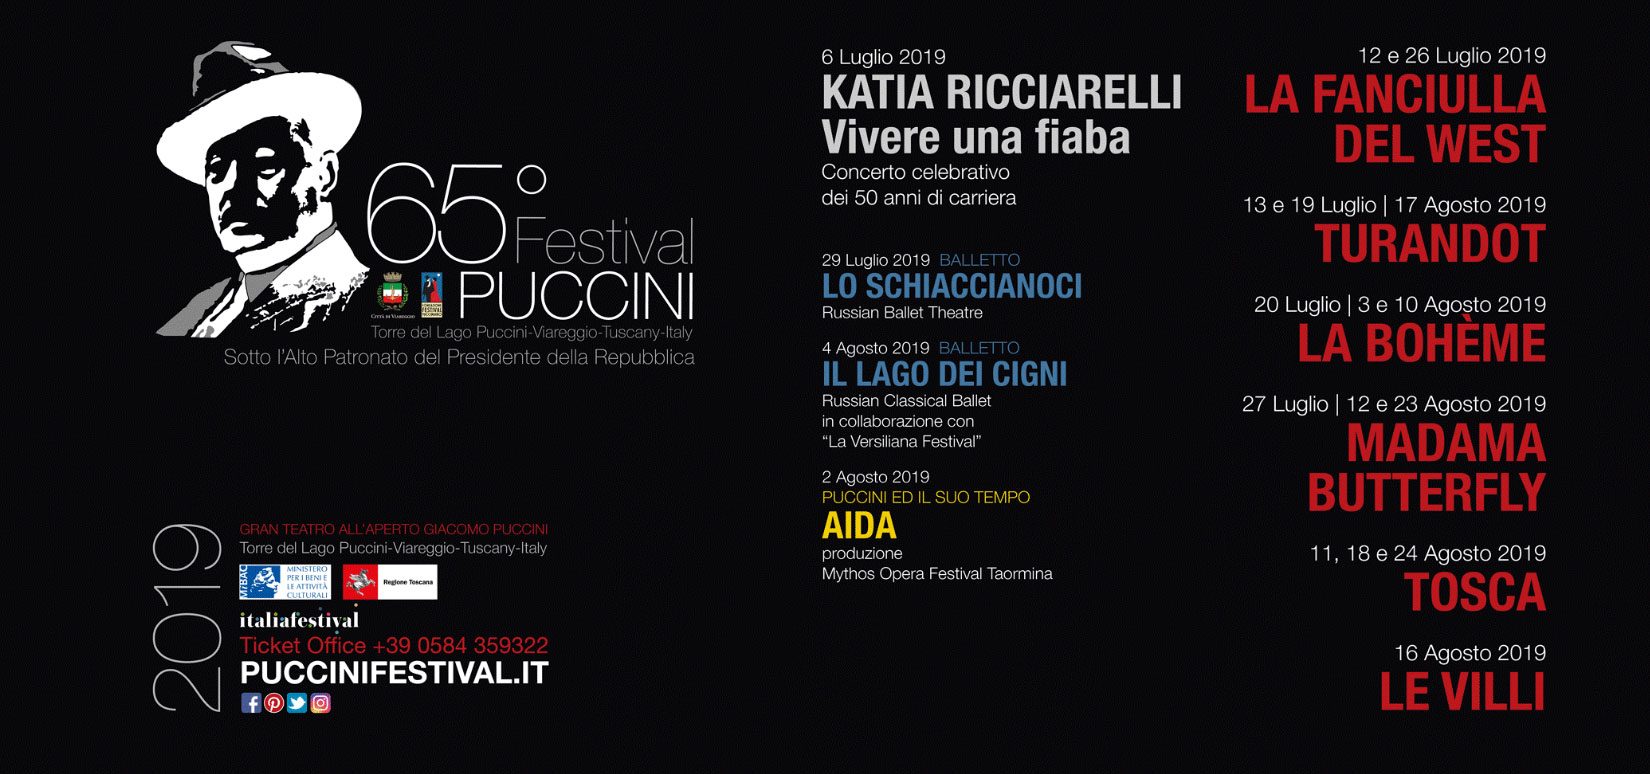 65° Festival di Puccini